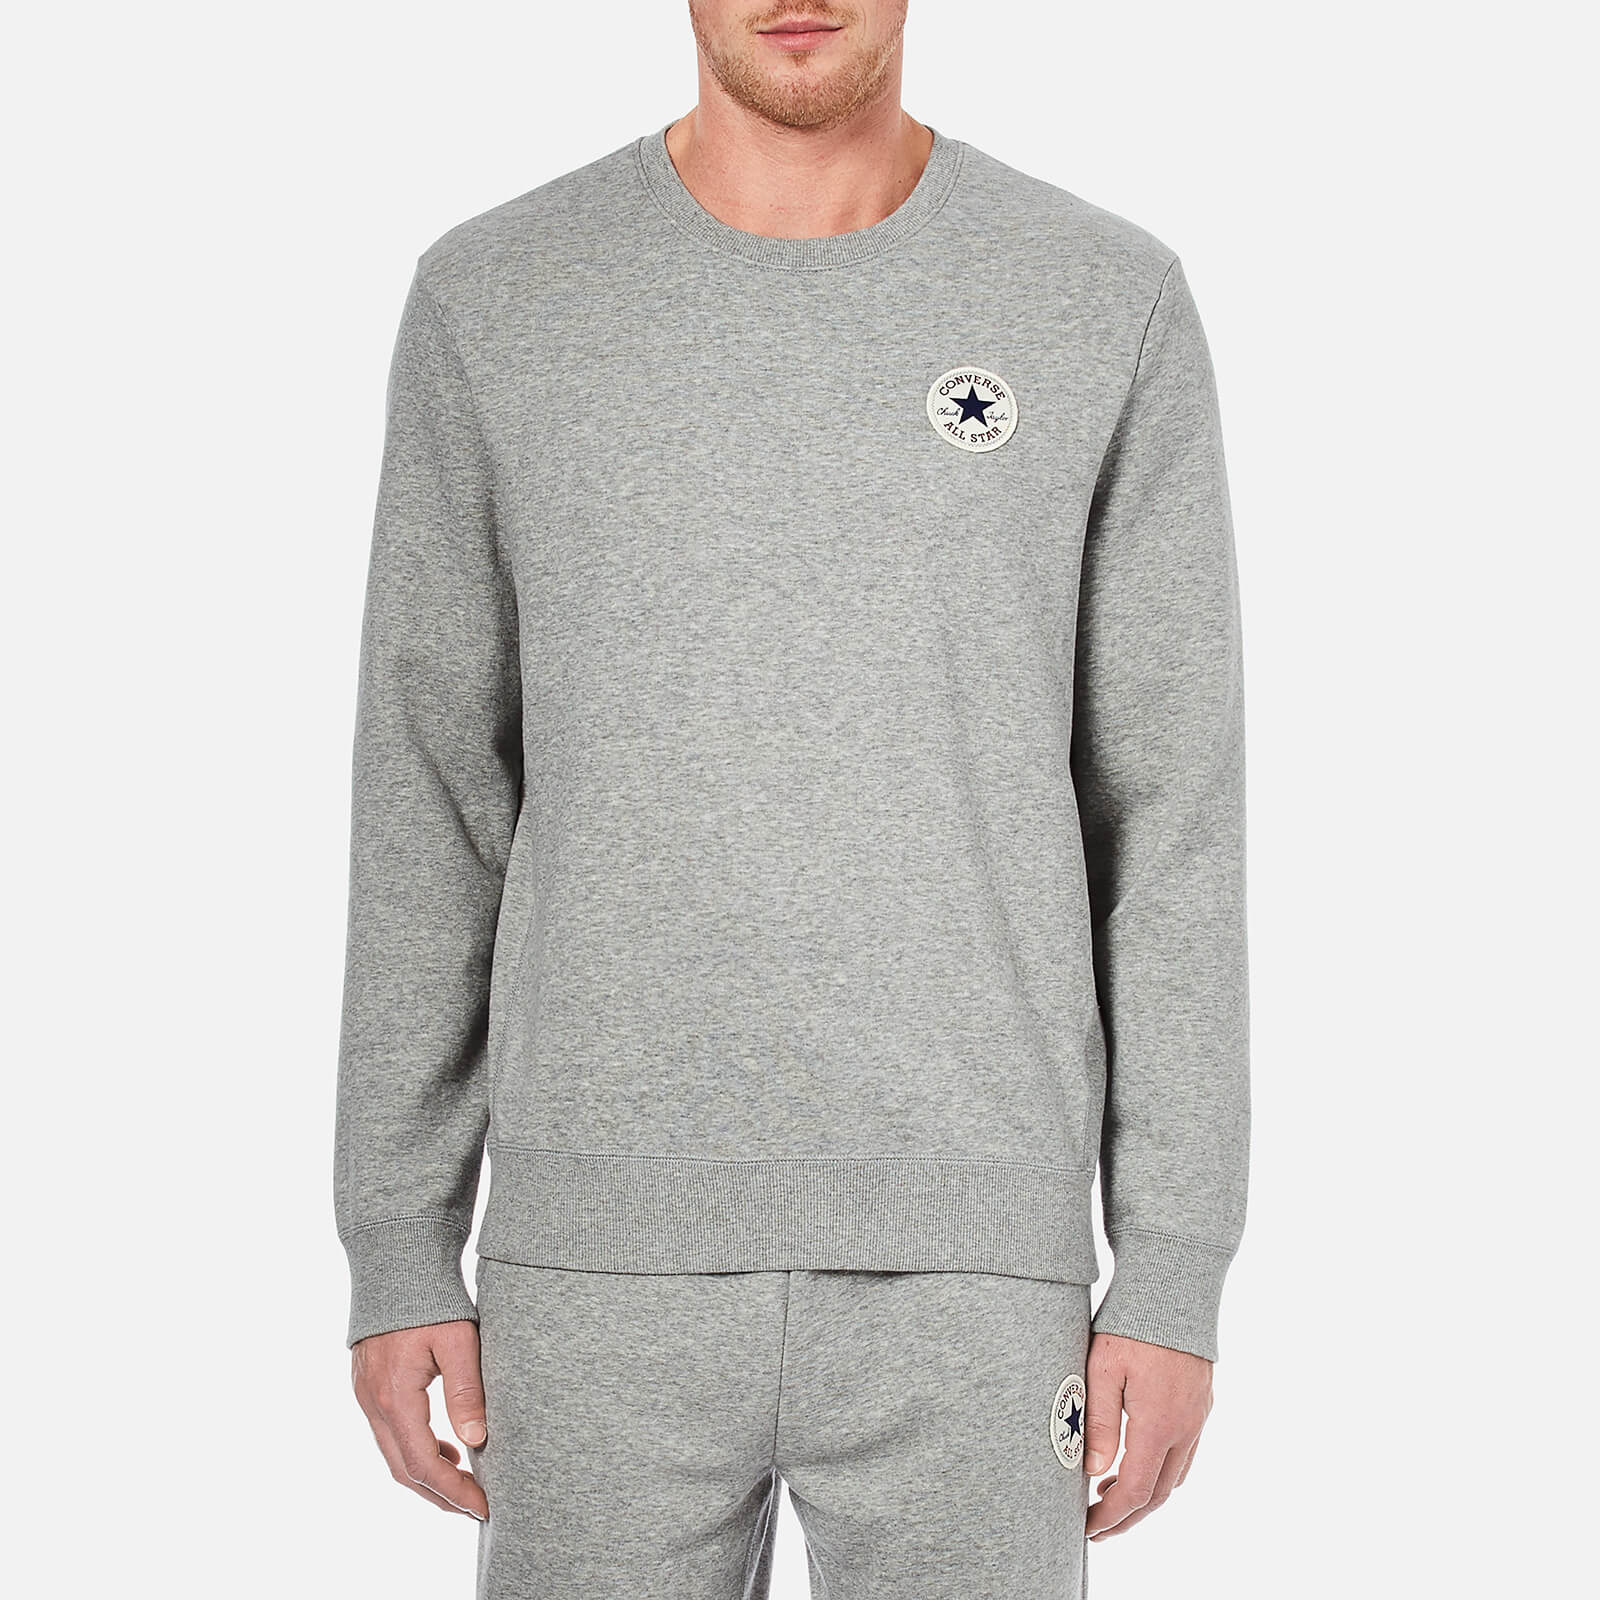 grey converse hoodie mens